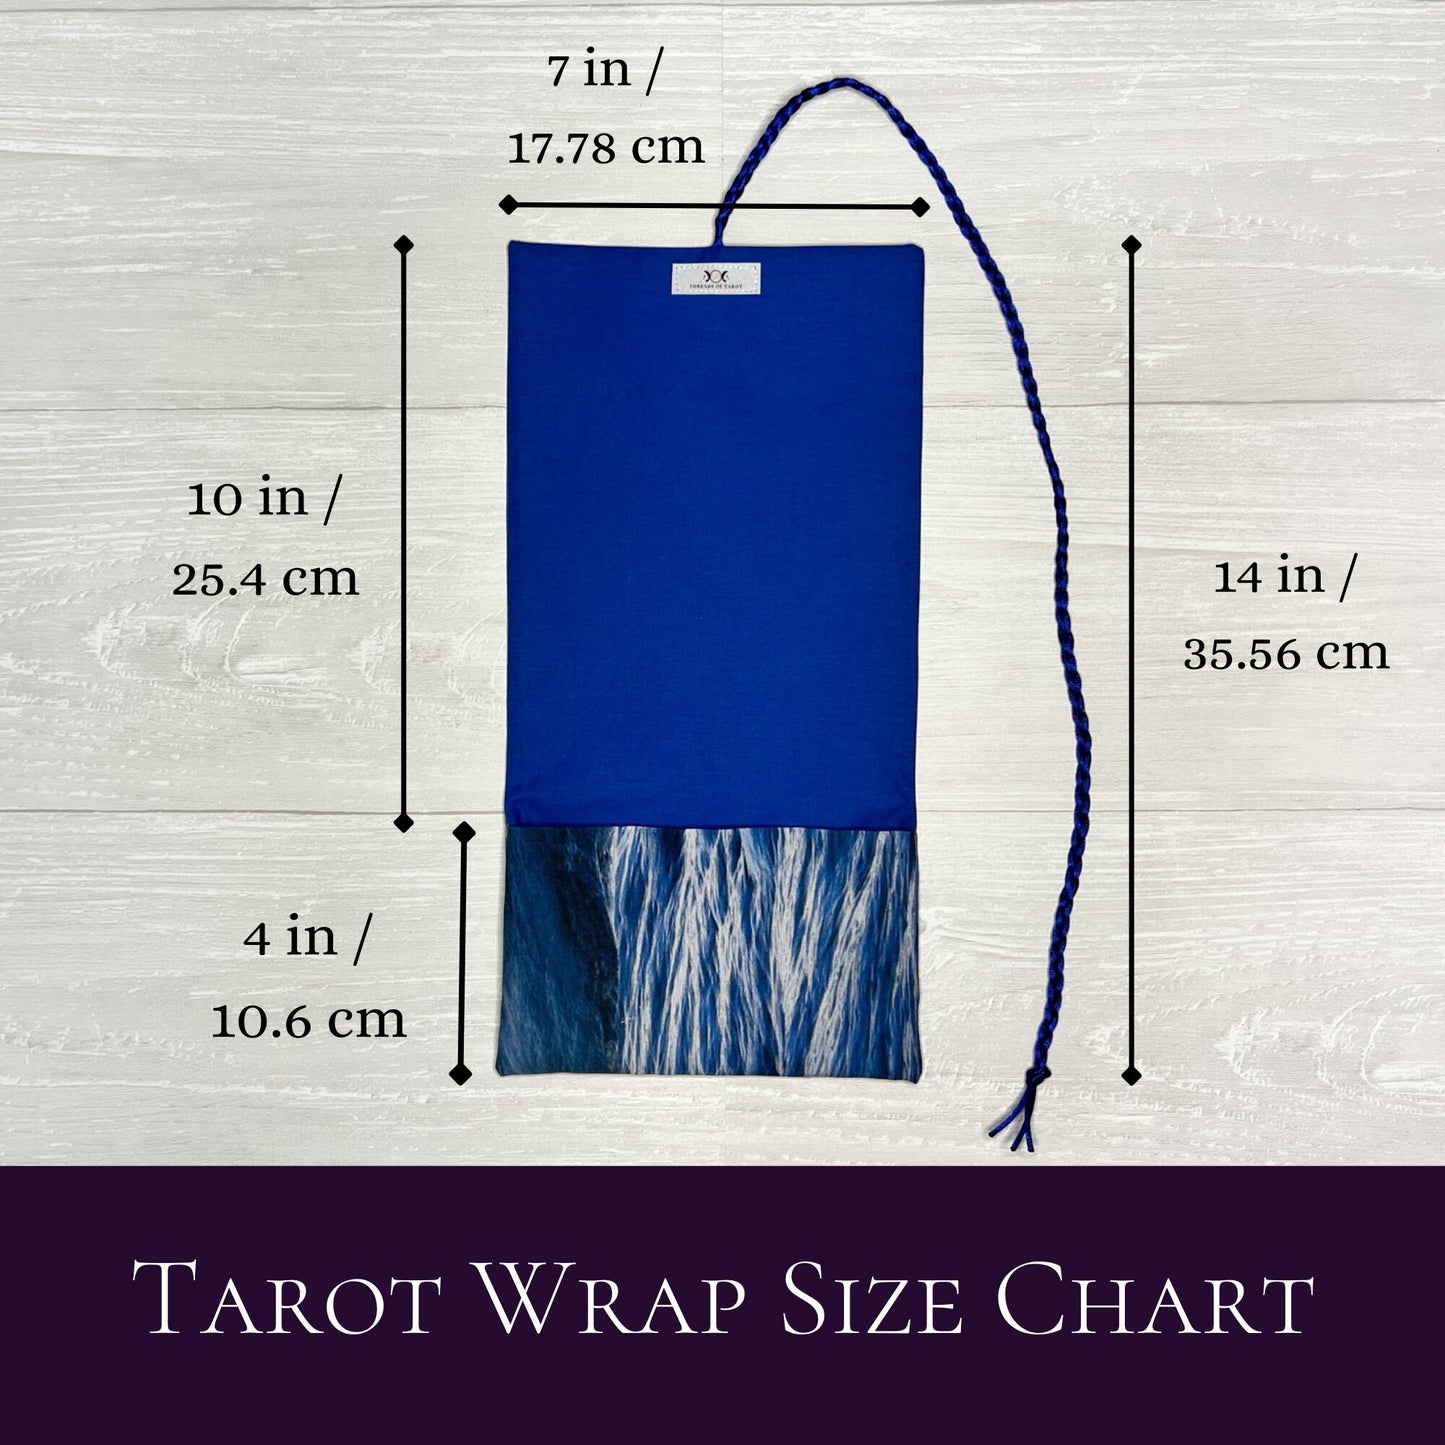 Wave Tarot Wrap, Water Element Tarot Fold Over Pouch, Tarot Supplies & Accessories, Tarot Card Holder, Divination Tools, Tarot Reader Gift